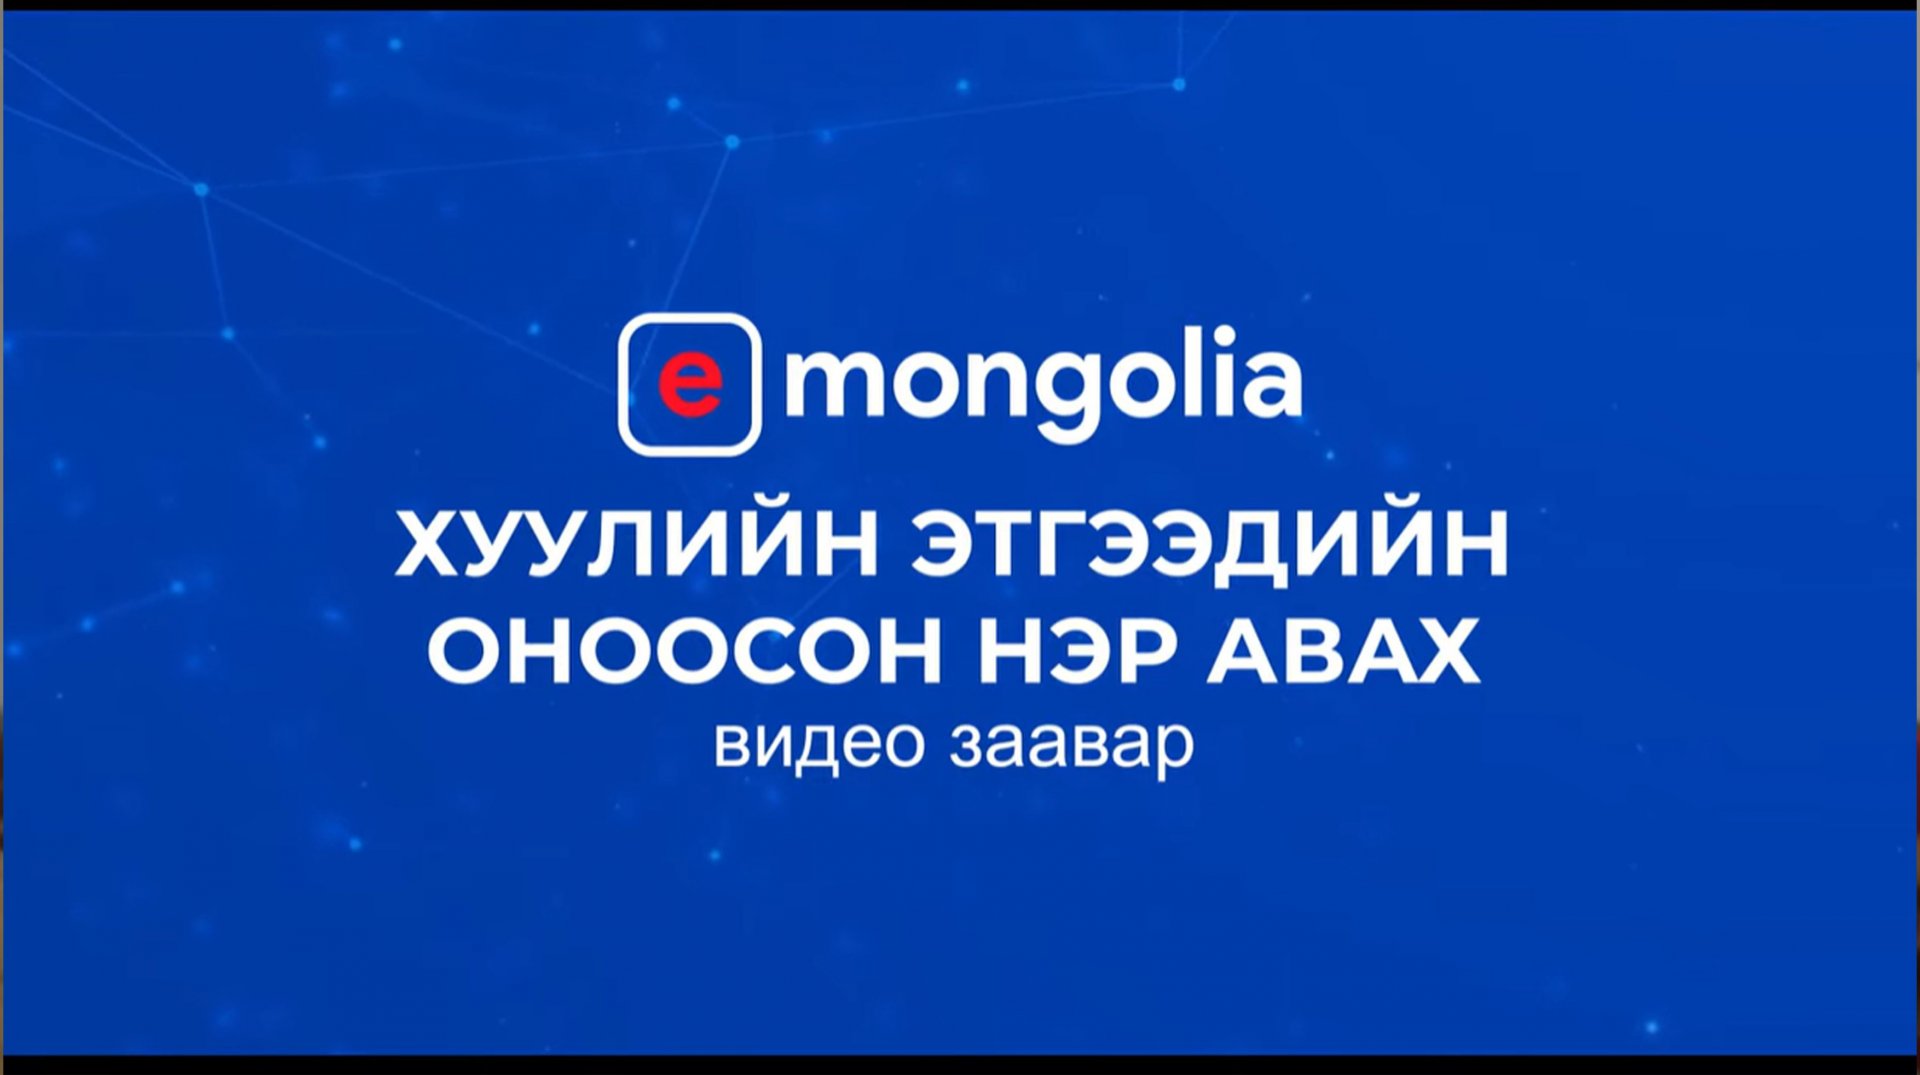 Хуулийн этгээдийн оноосон нэр авах - E mongolia